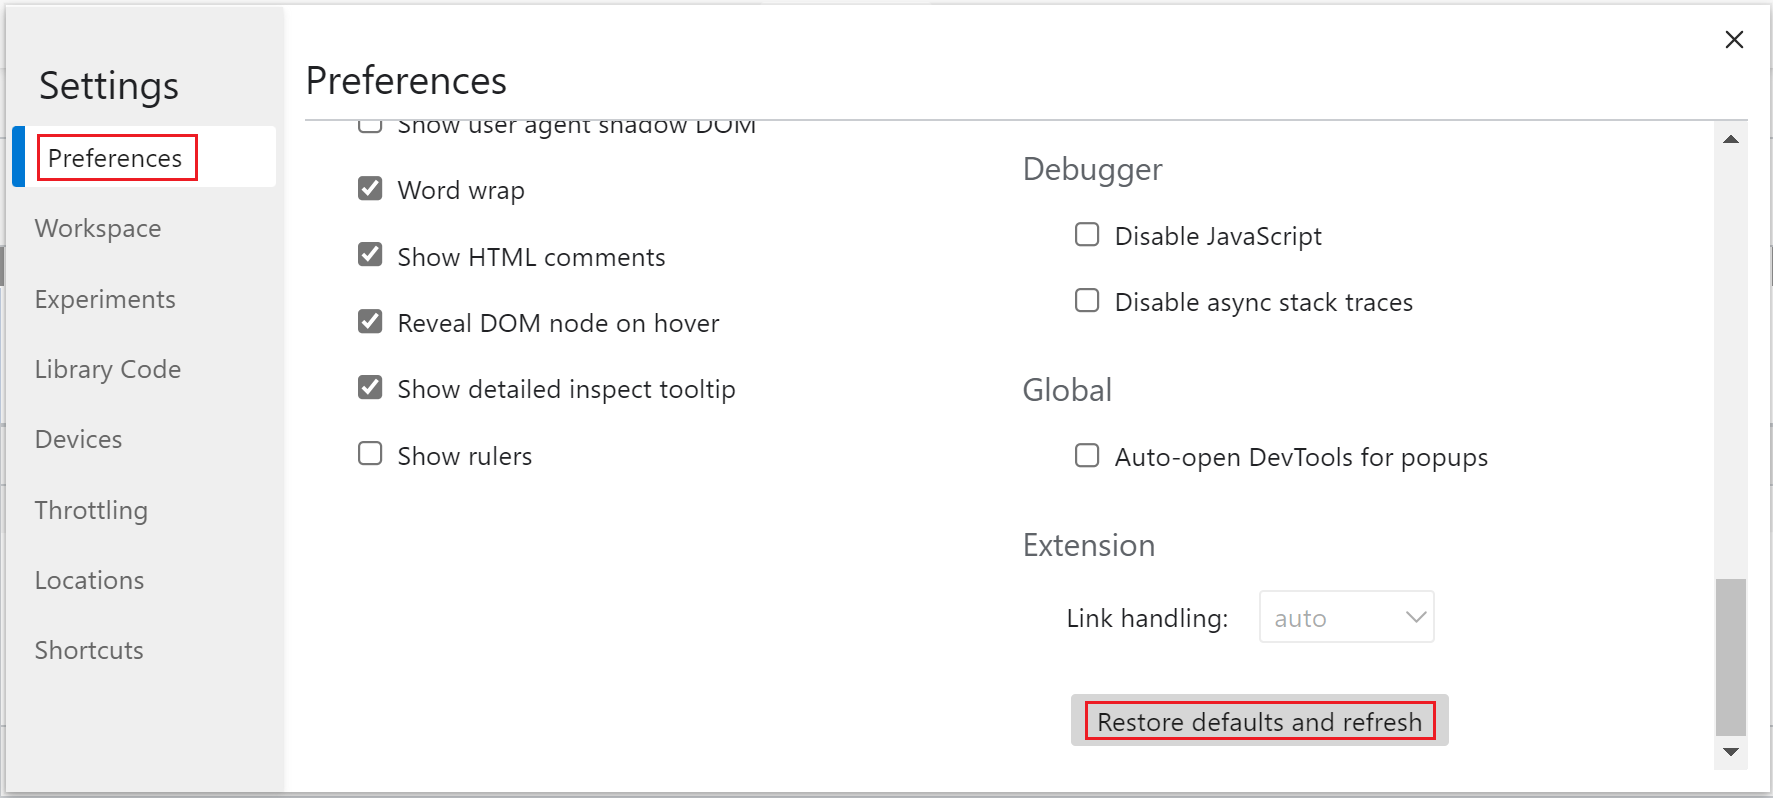 Restoring default settings